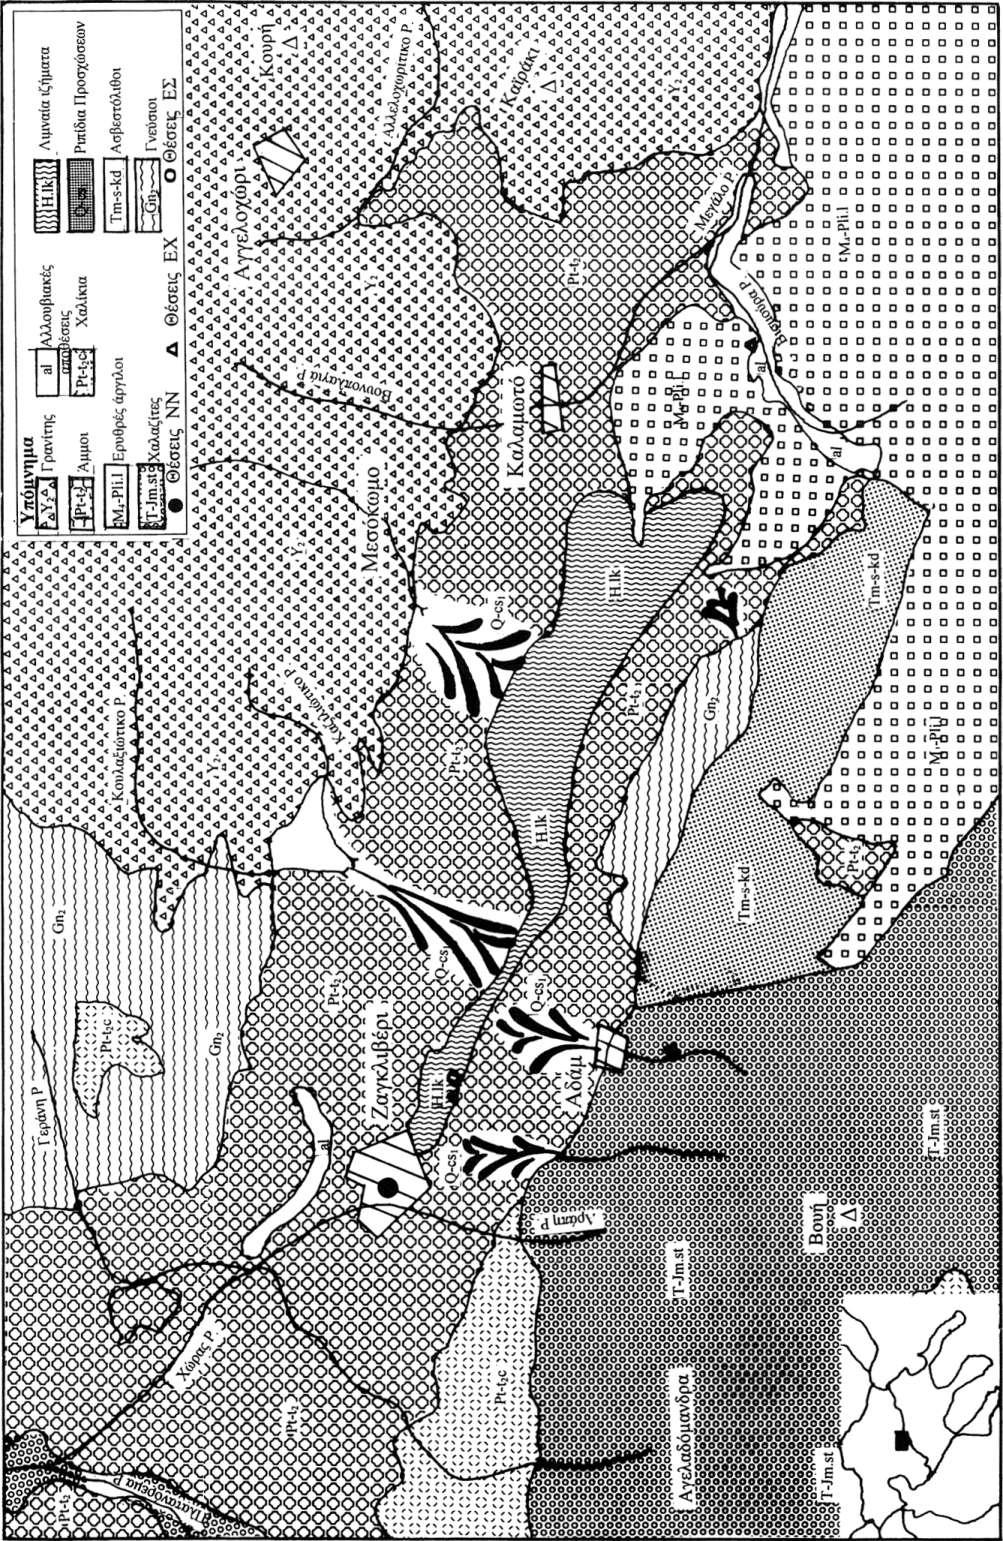 73 Σχ. 1. Γεωλογικός χάρτης περωχής Ζαγκλιβερίου.